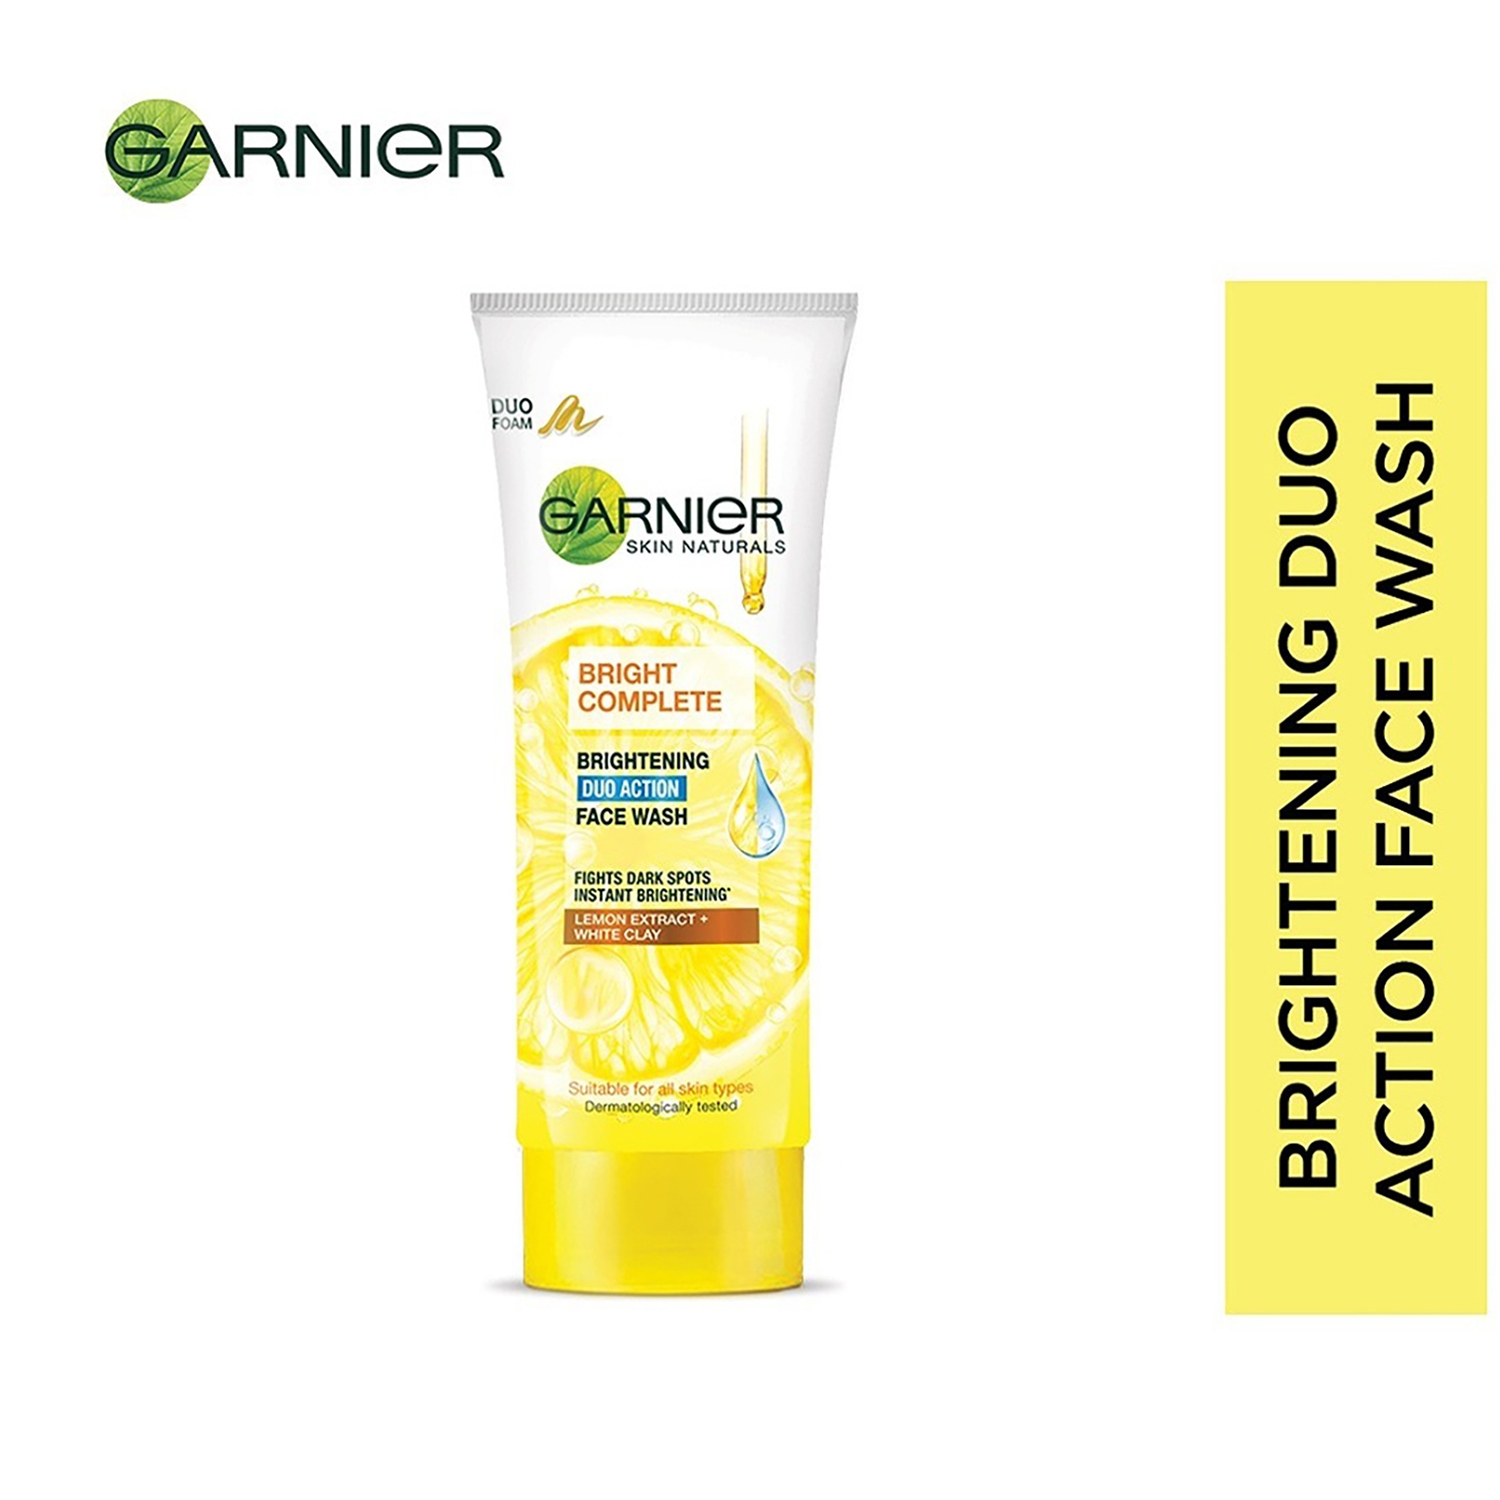 Garnier | Garnier Bright Complete Brightening Duo Action Face Wash (100g)